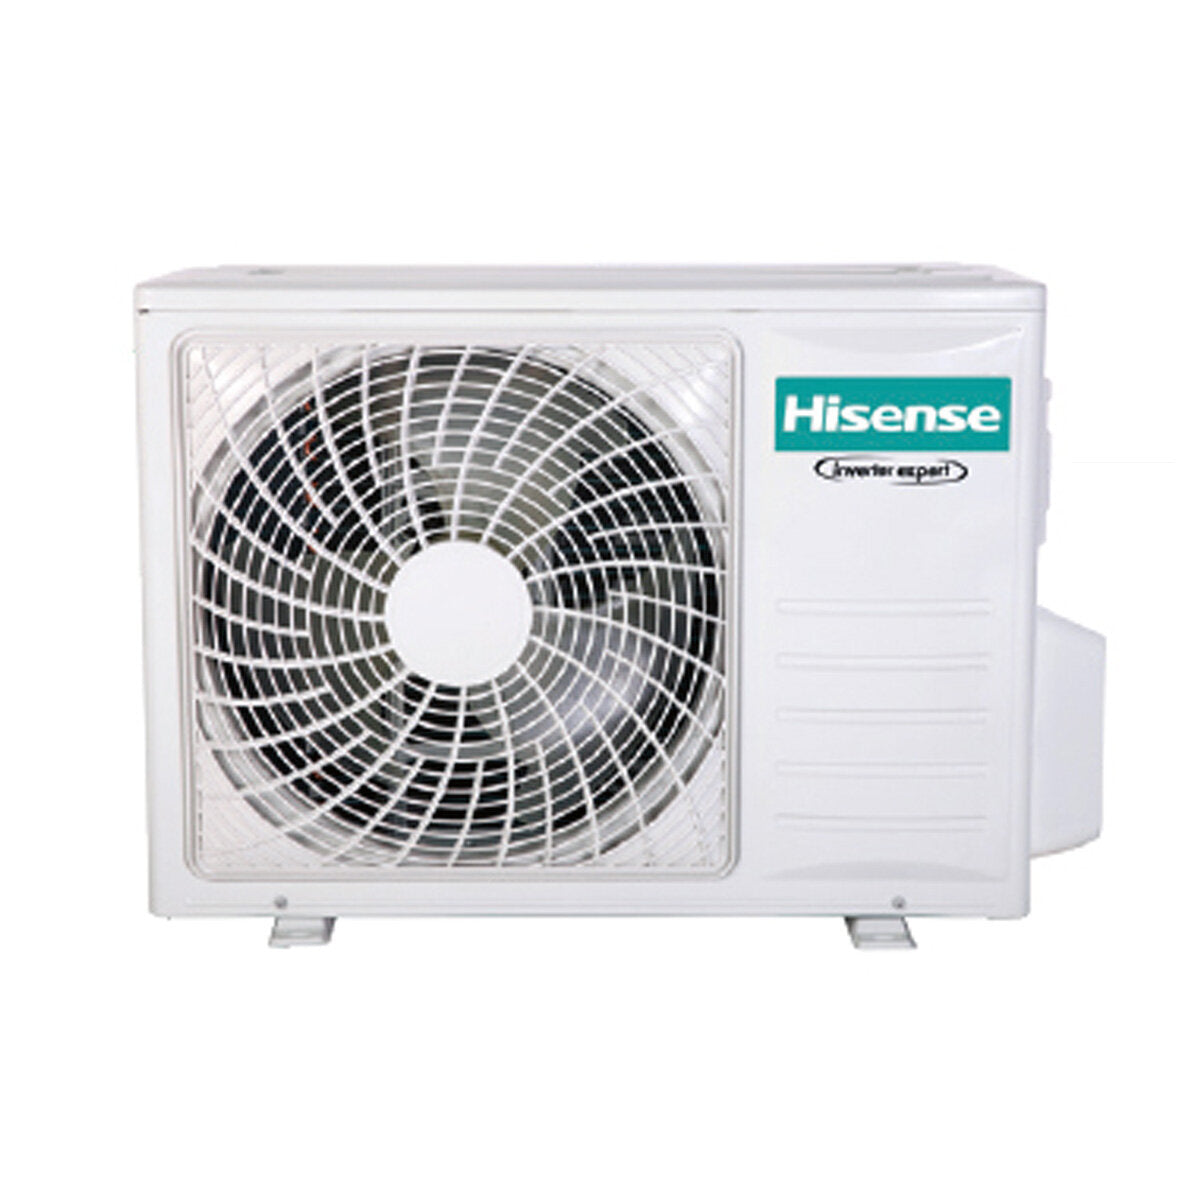 Hisense Hi-Comfort Trial Split Klimaanlage 9000+9000+9000 BTU Inverter A++ WLAN Außengerät 7,0 kW